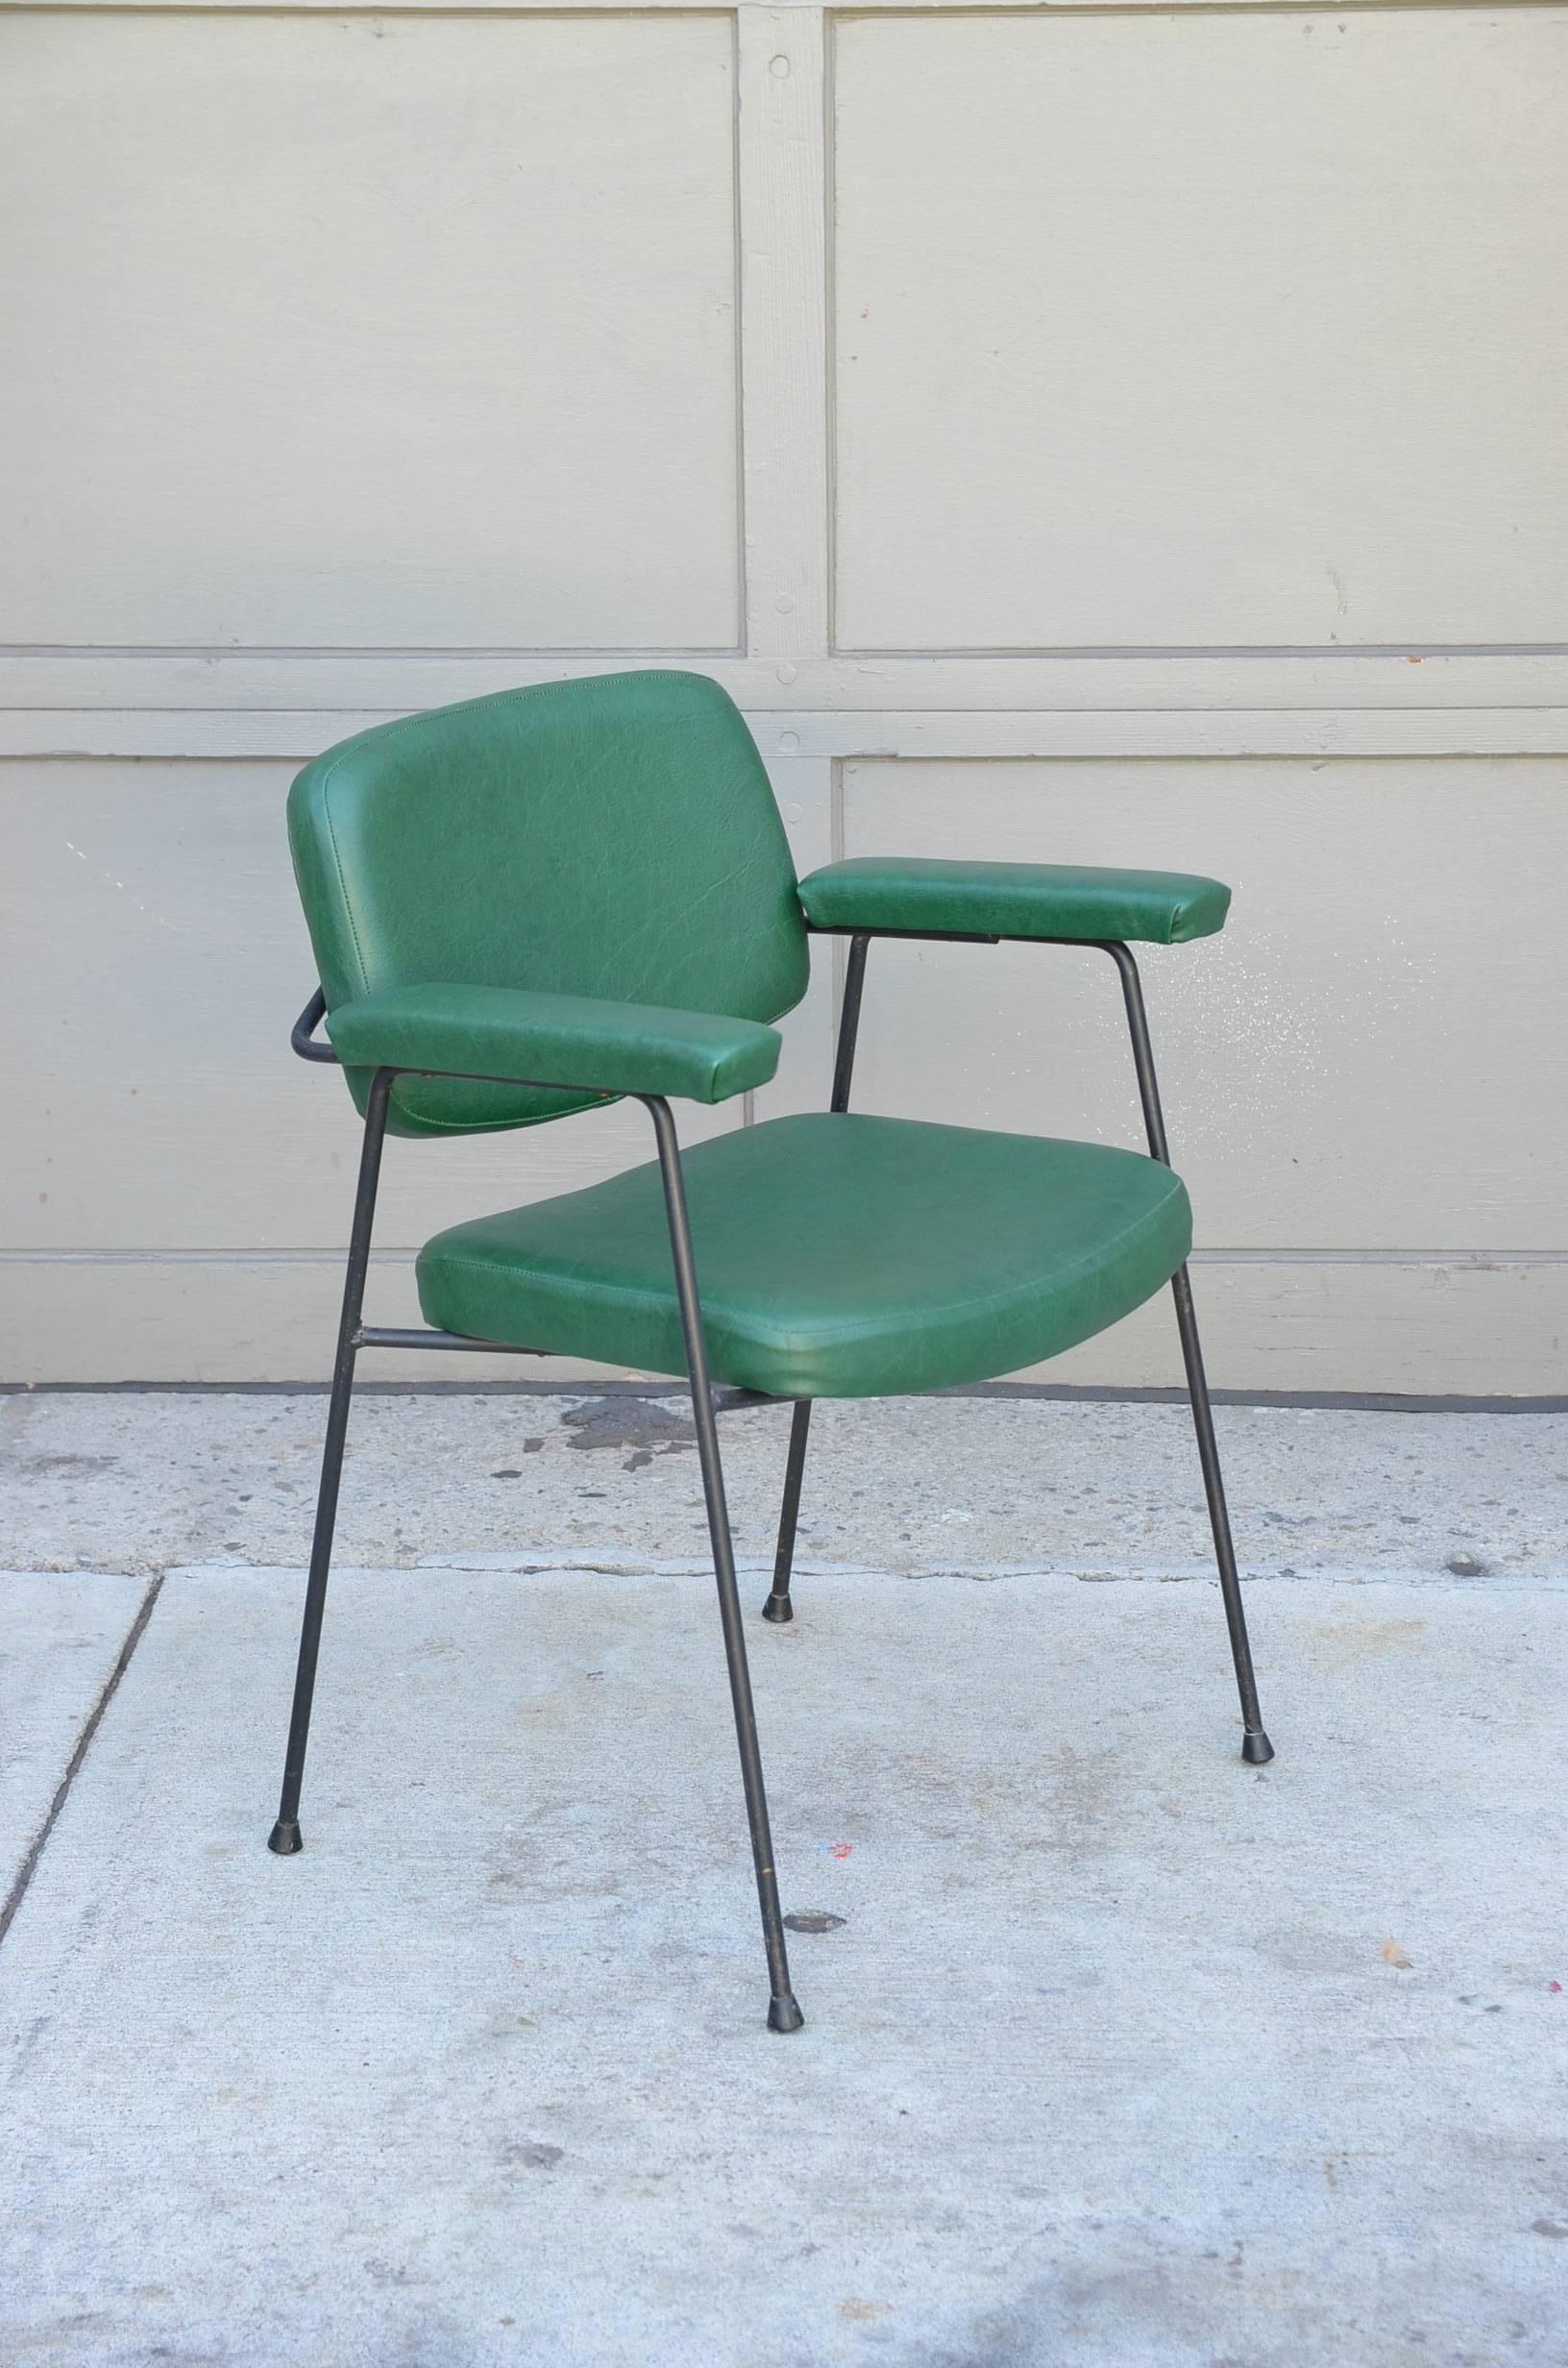 Original CM197-Sessel von Pierre Paulin. Entworfen für Thonet, Frankreich, 1958. Grüne Vinyl-Polsterung in ausgezeichnetem Originalzustand. Kann mit zwei Yards C.O.M. leicht neu gepolstert werden.